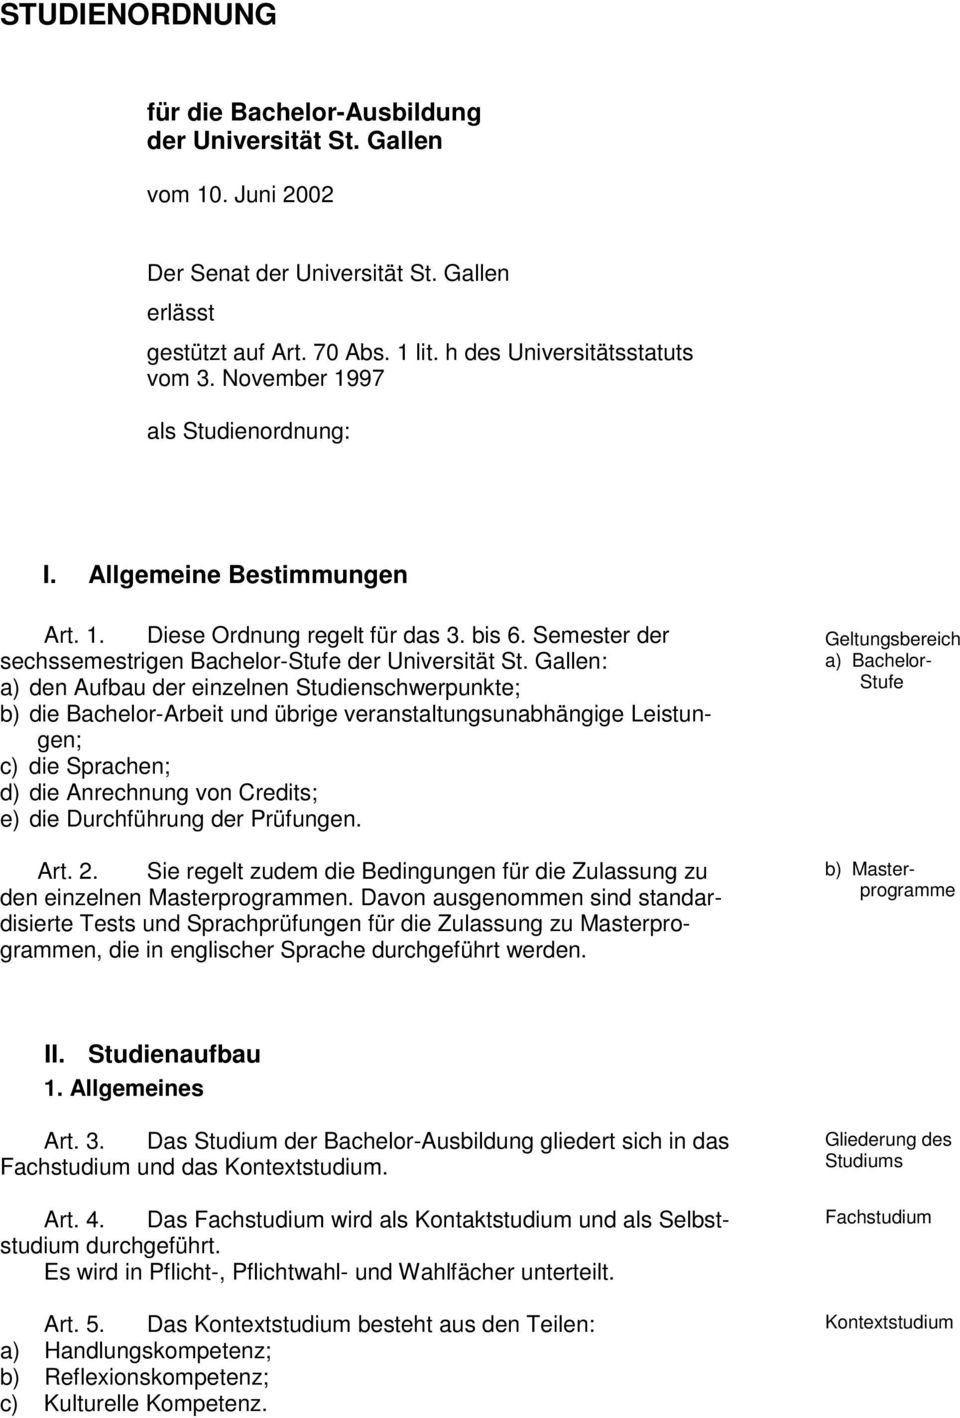 Gallen: a) den Aufbau der einzelnen Studienschwerpunkte; b) die Bachelor-Arbeit und übrige veranstaltungsunabhängige Leistungen; c) die Sprachen; d) die Anrechnung von Credits; e) die Durchführung